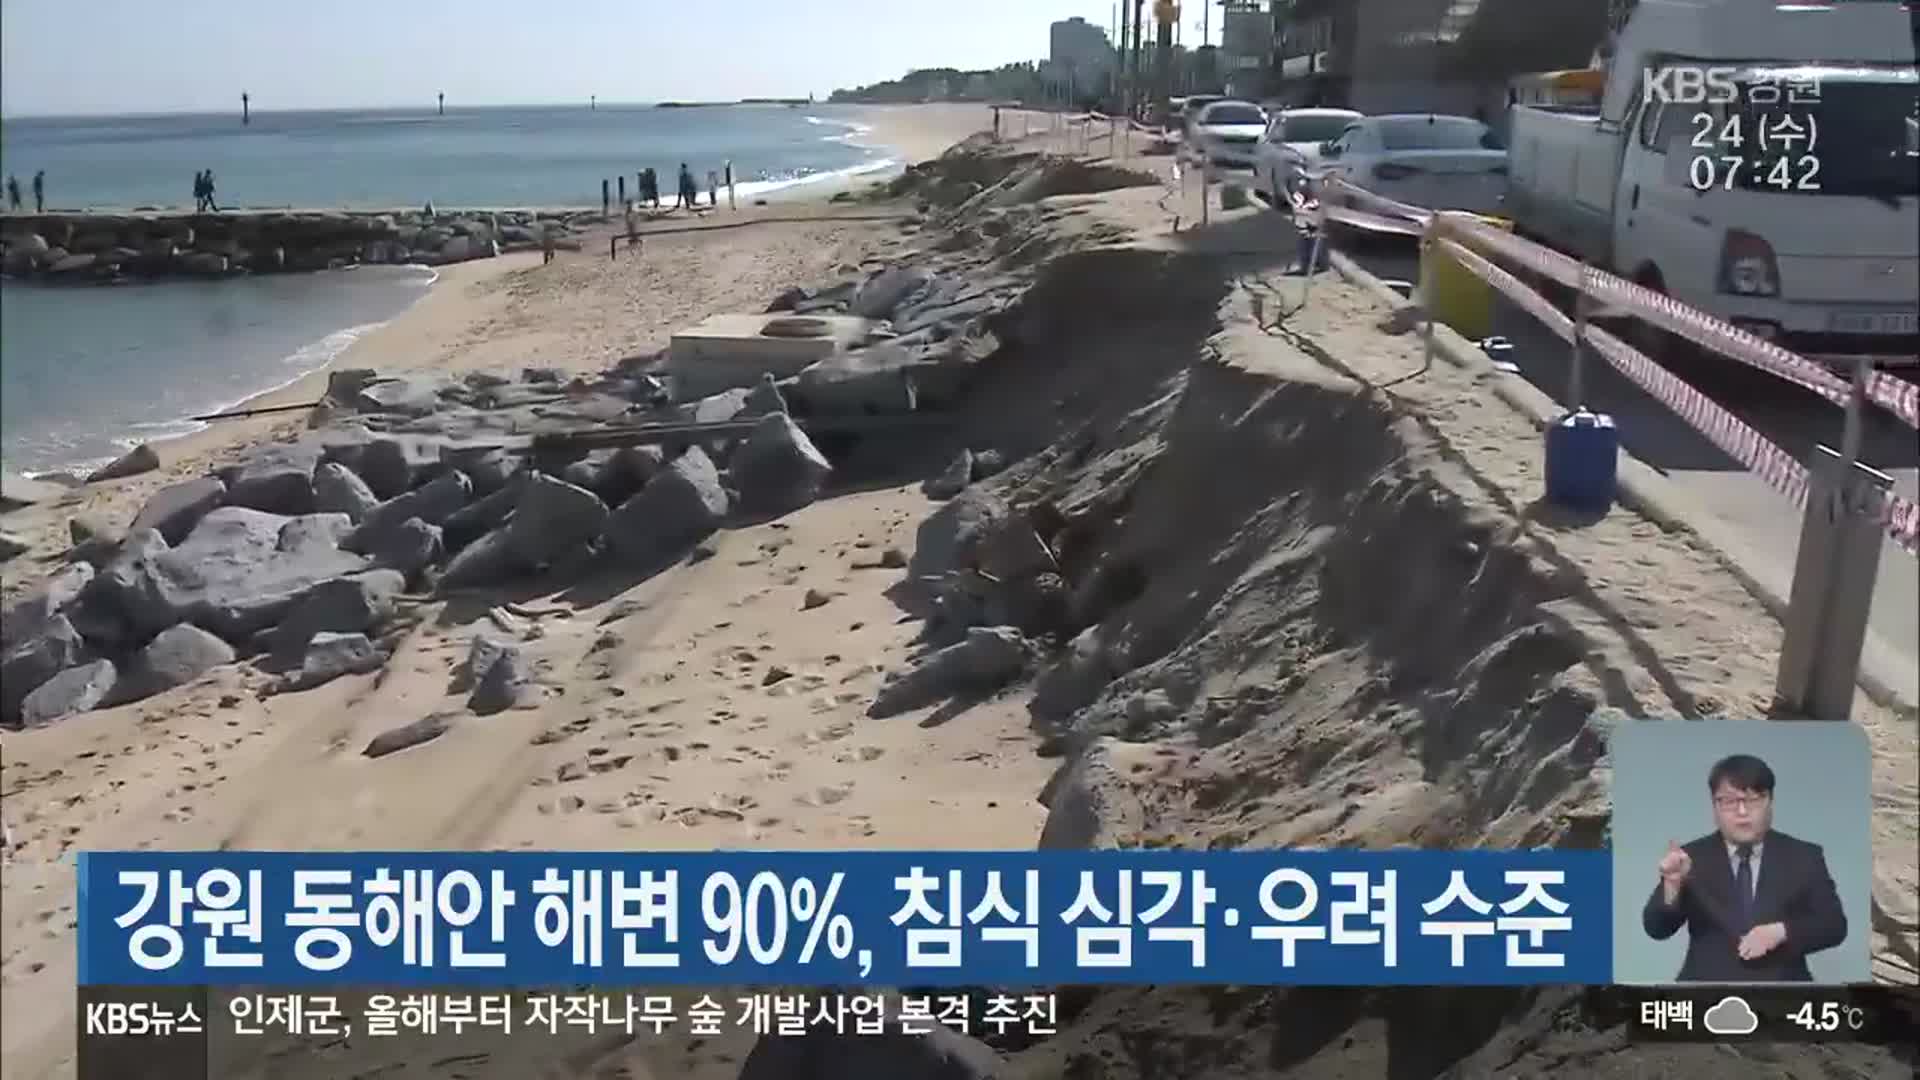 강원 동해안 해변 90%, 침식 심각·우려 수준